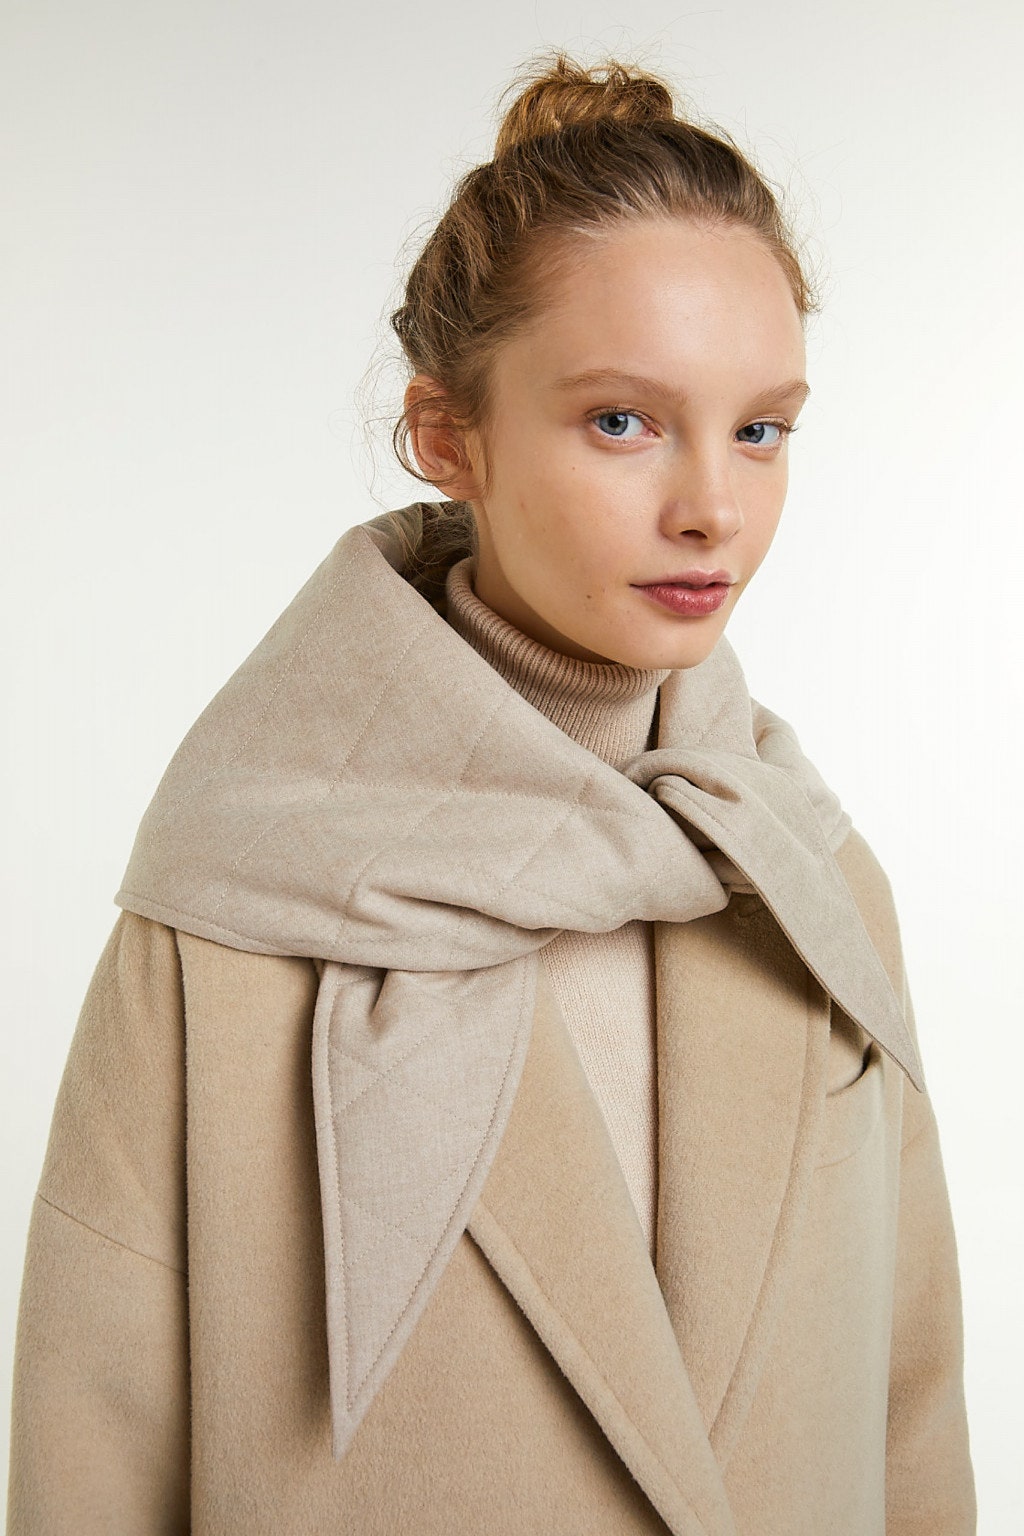 Vogue Россия представили коллекцию стеганых косынок и шарфов